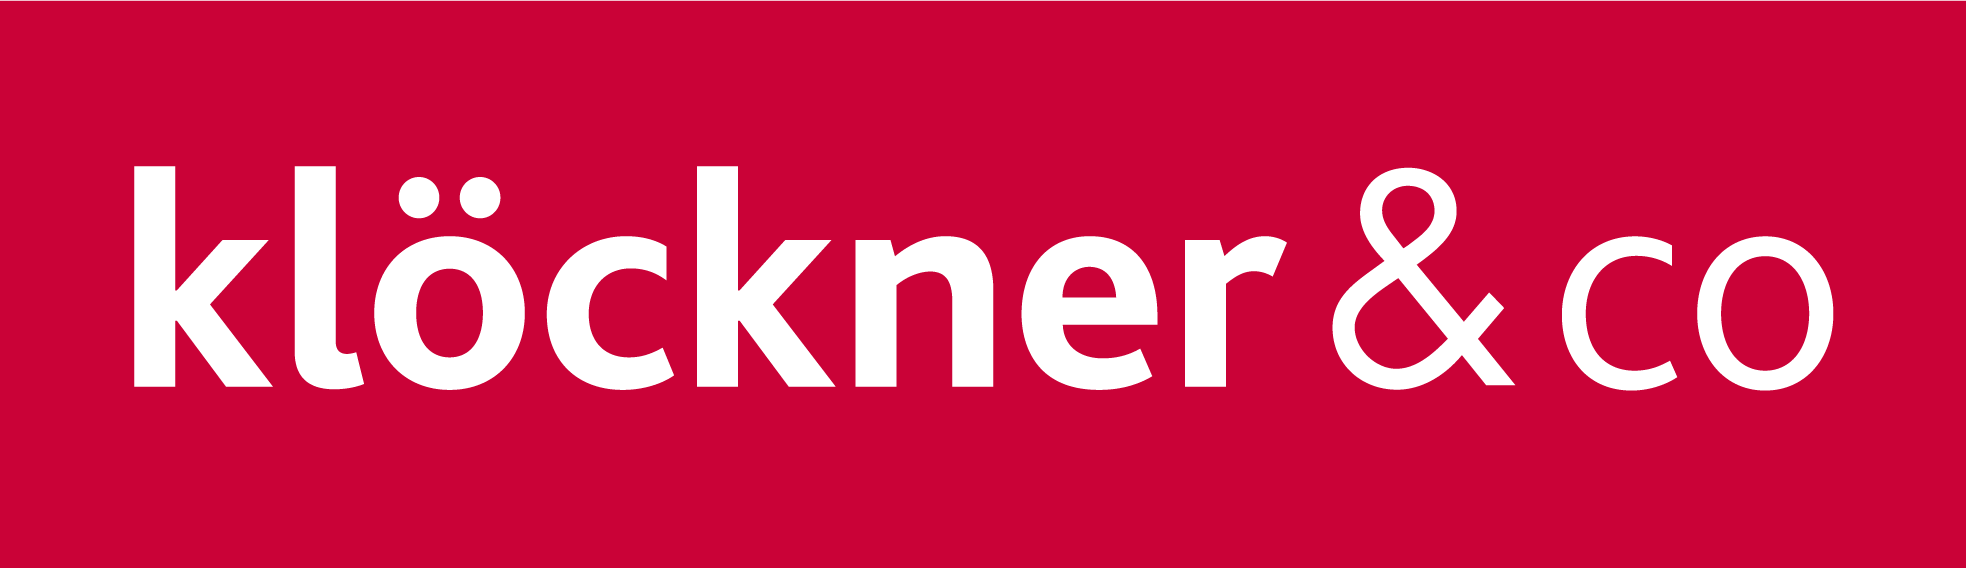 kloeckner_logo_de.png